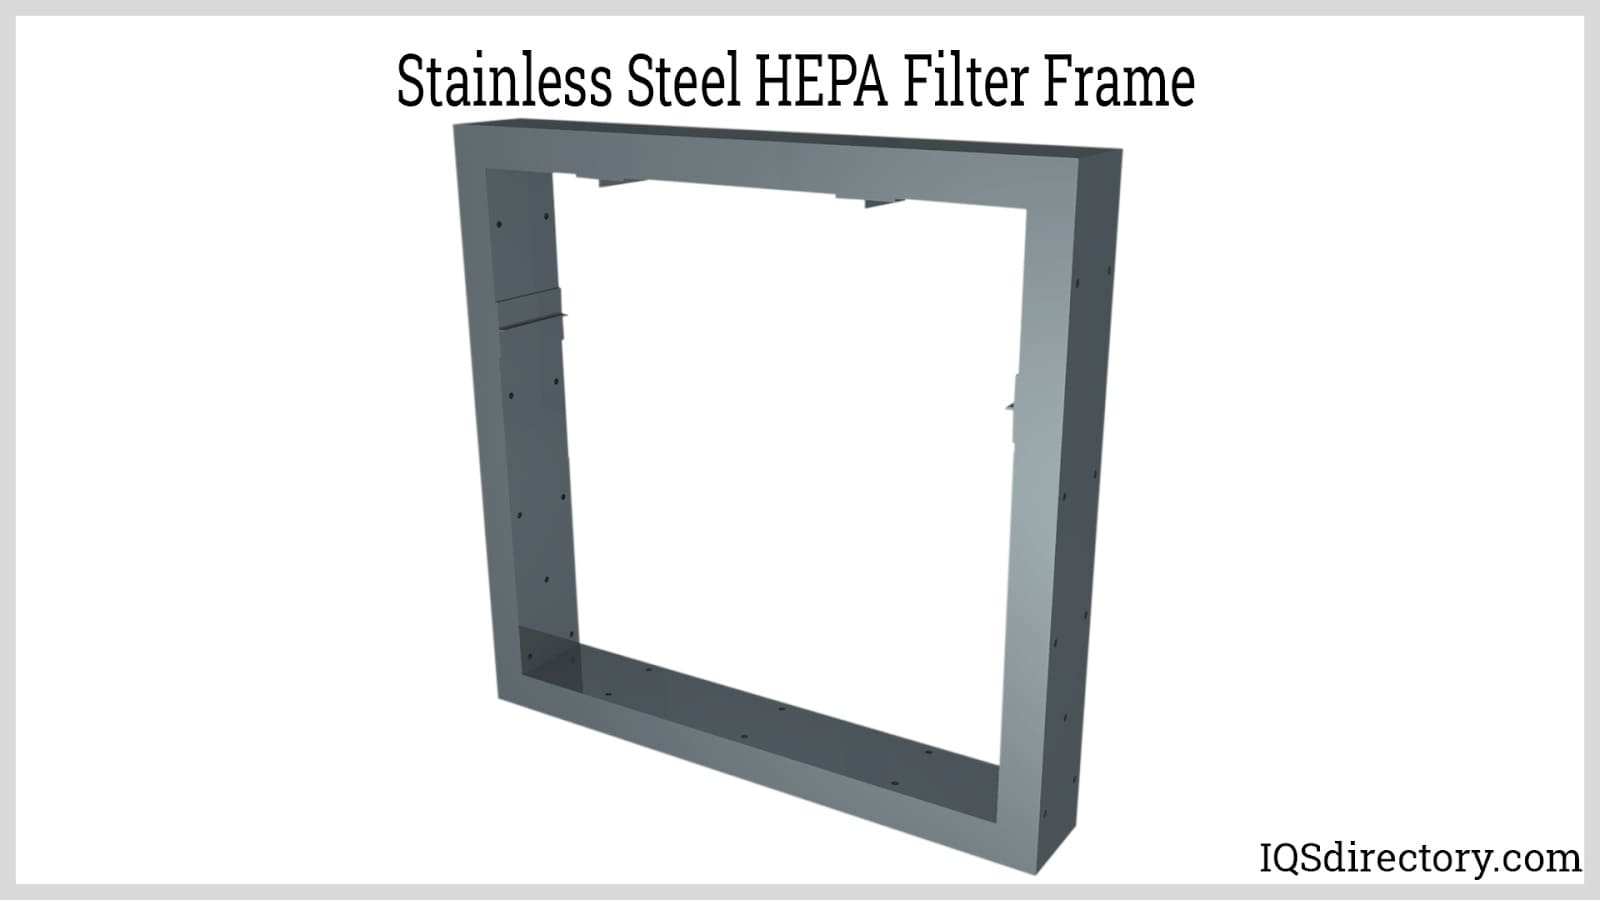 Stainless Steel HEPA Filter Frame